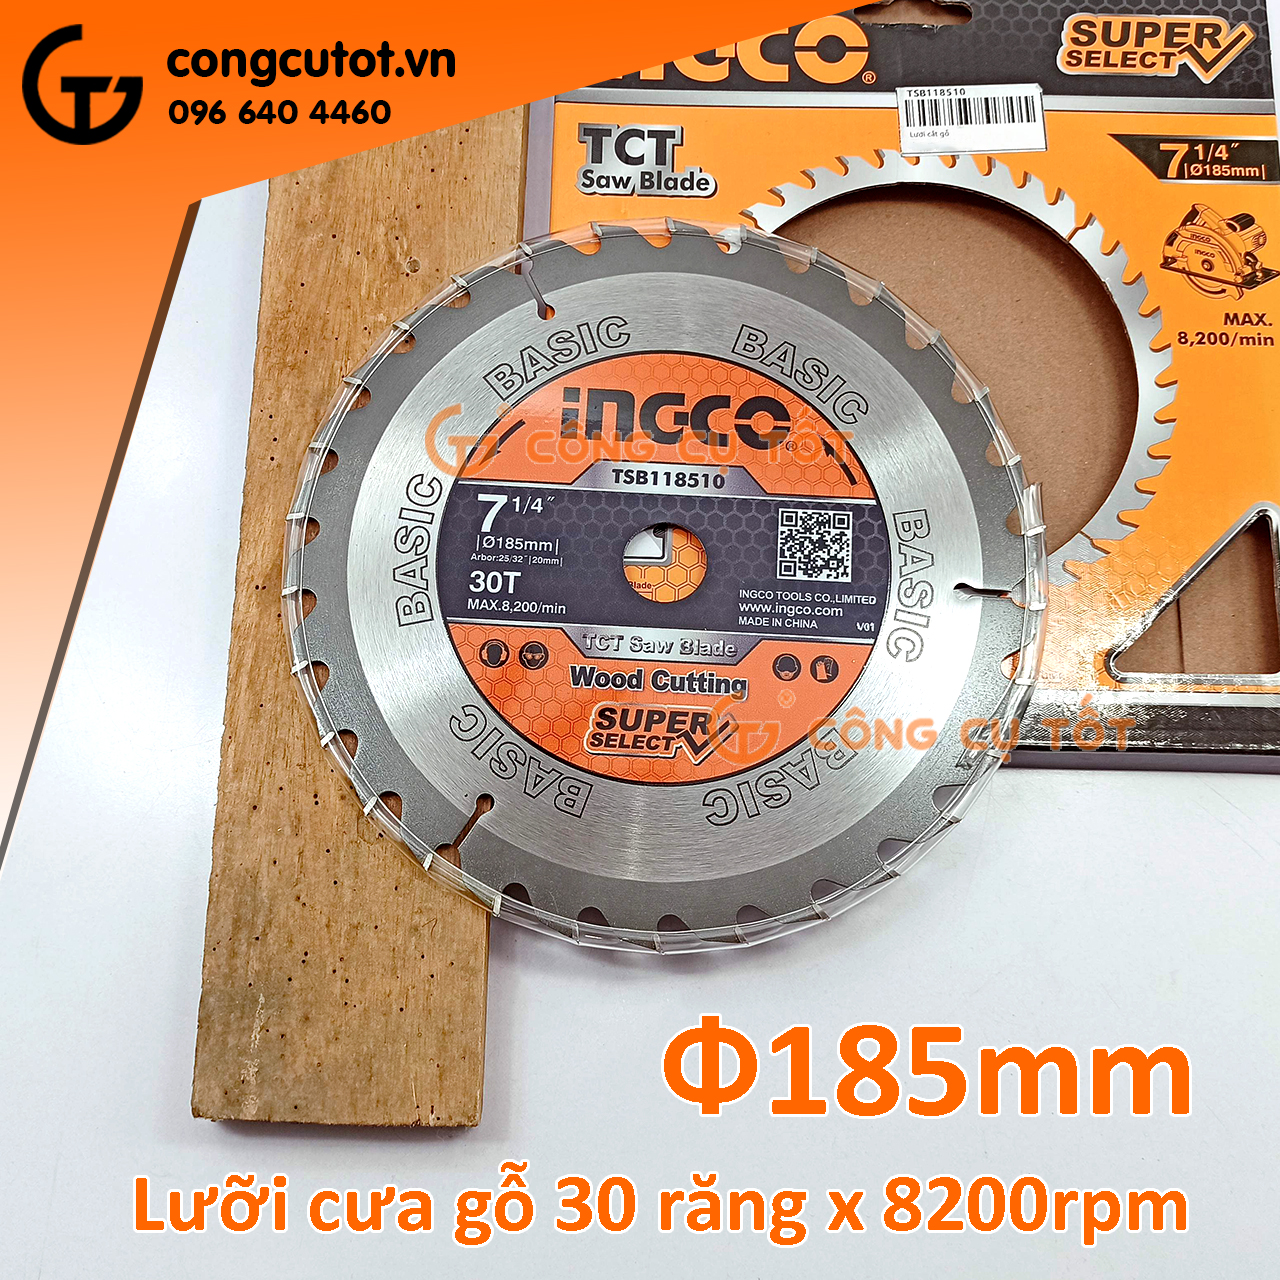 Lưỡi cắt gỗ Ø185mm 30 răng hợp kim TCT 8200rpm INGCO TSB118510